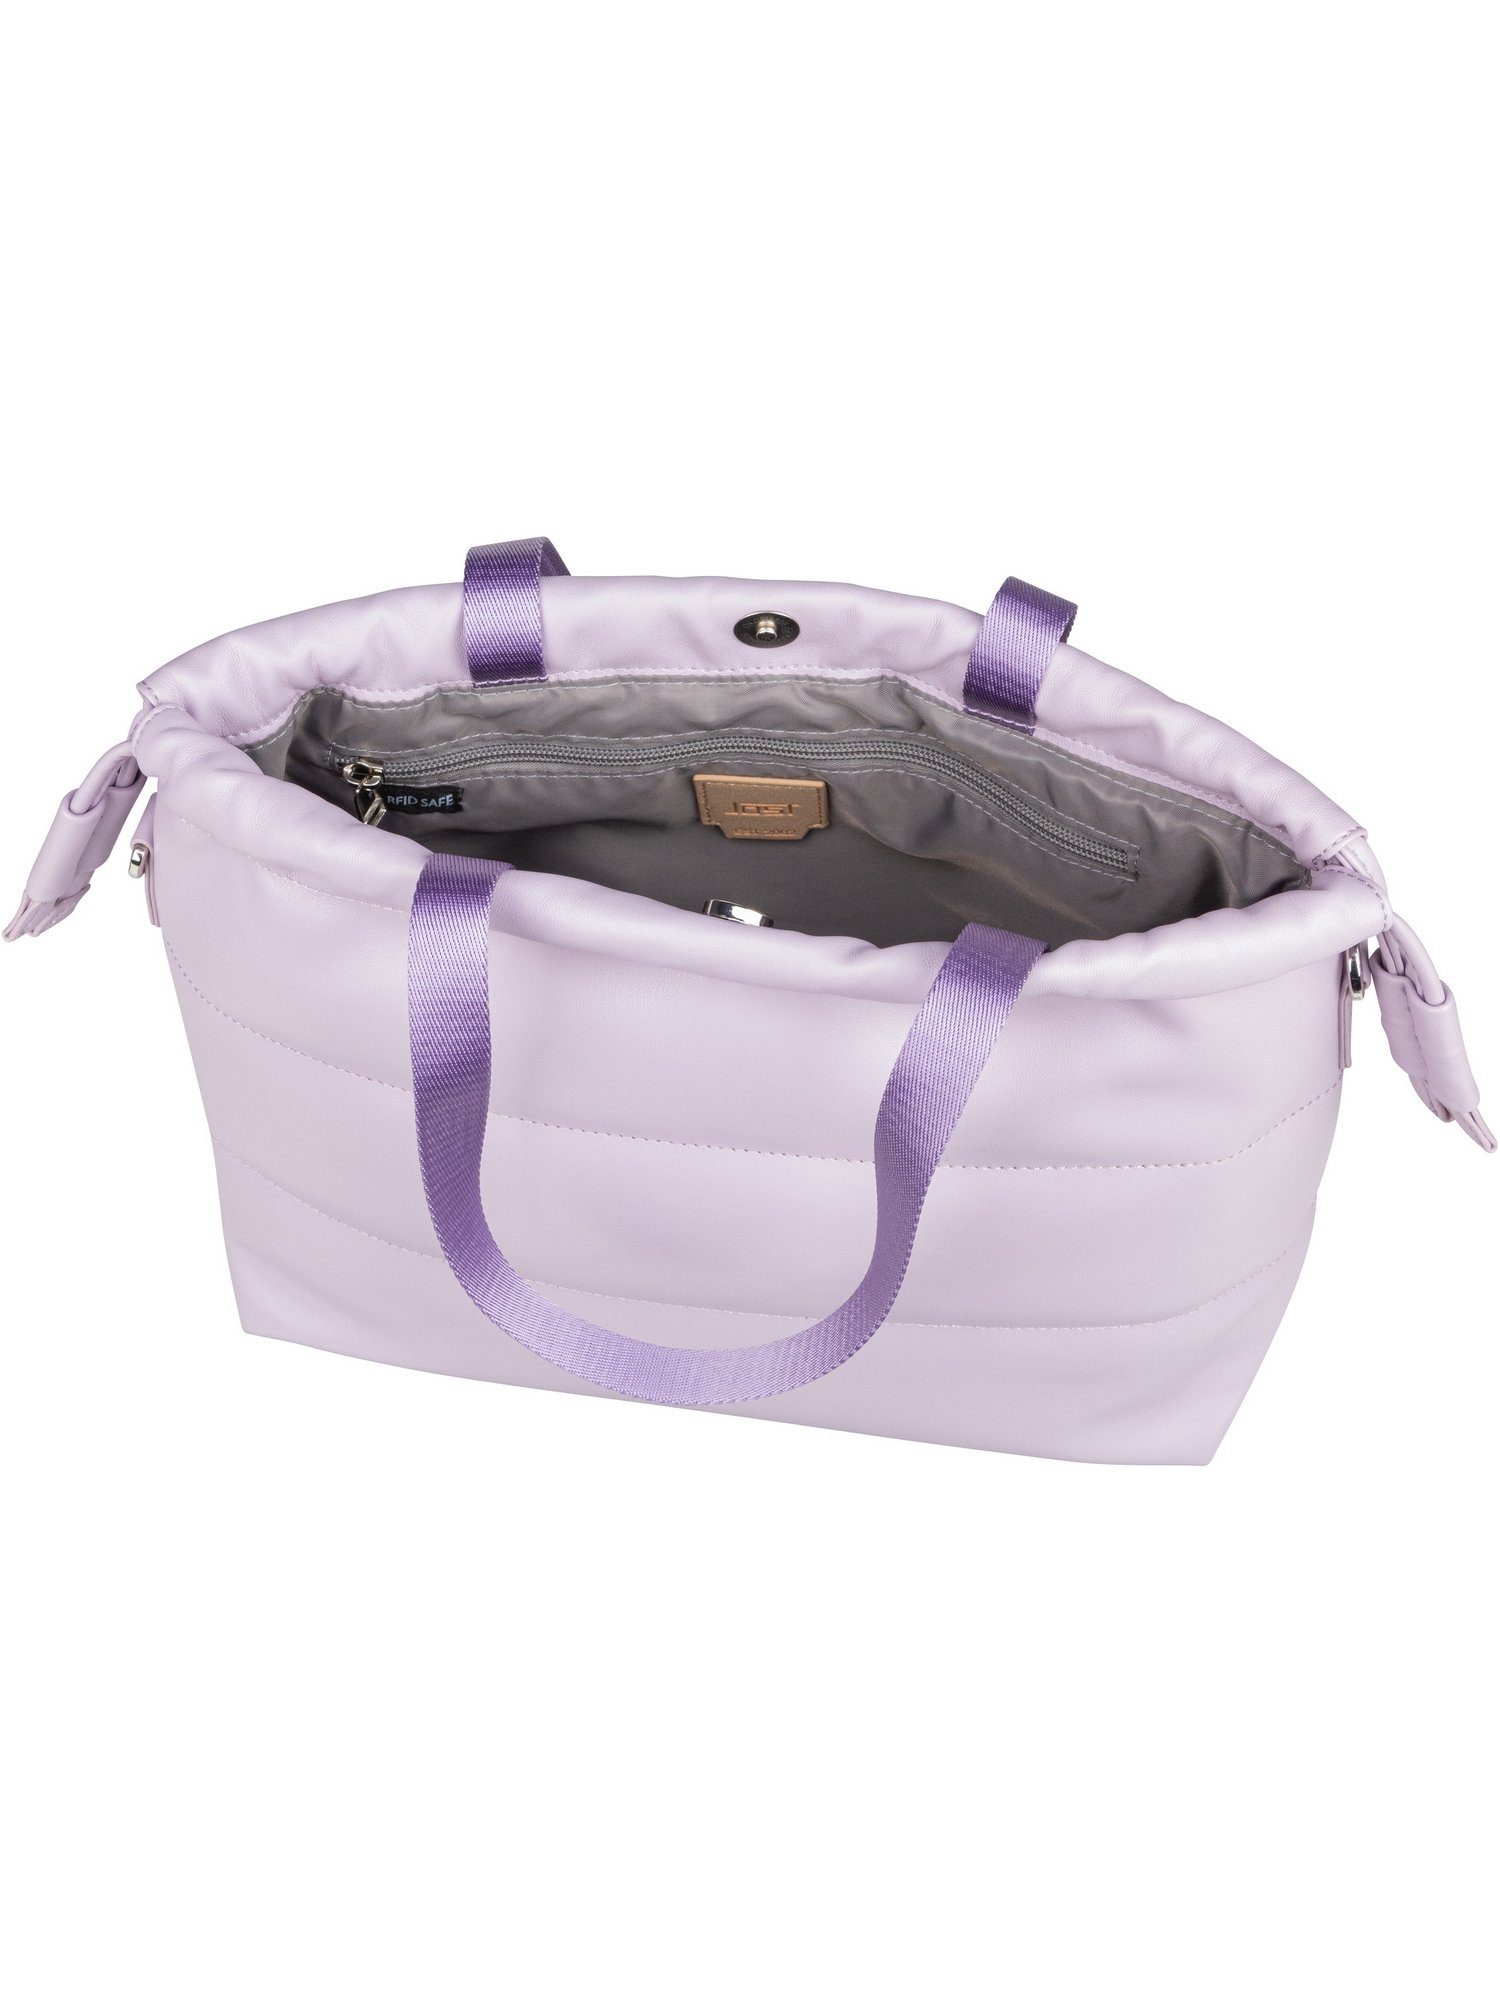 Bag Lilac Drawstring Jost Handtasche Shoulder Bag, Kaarina